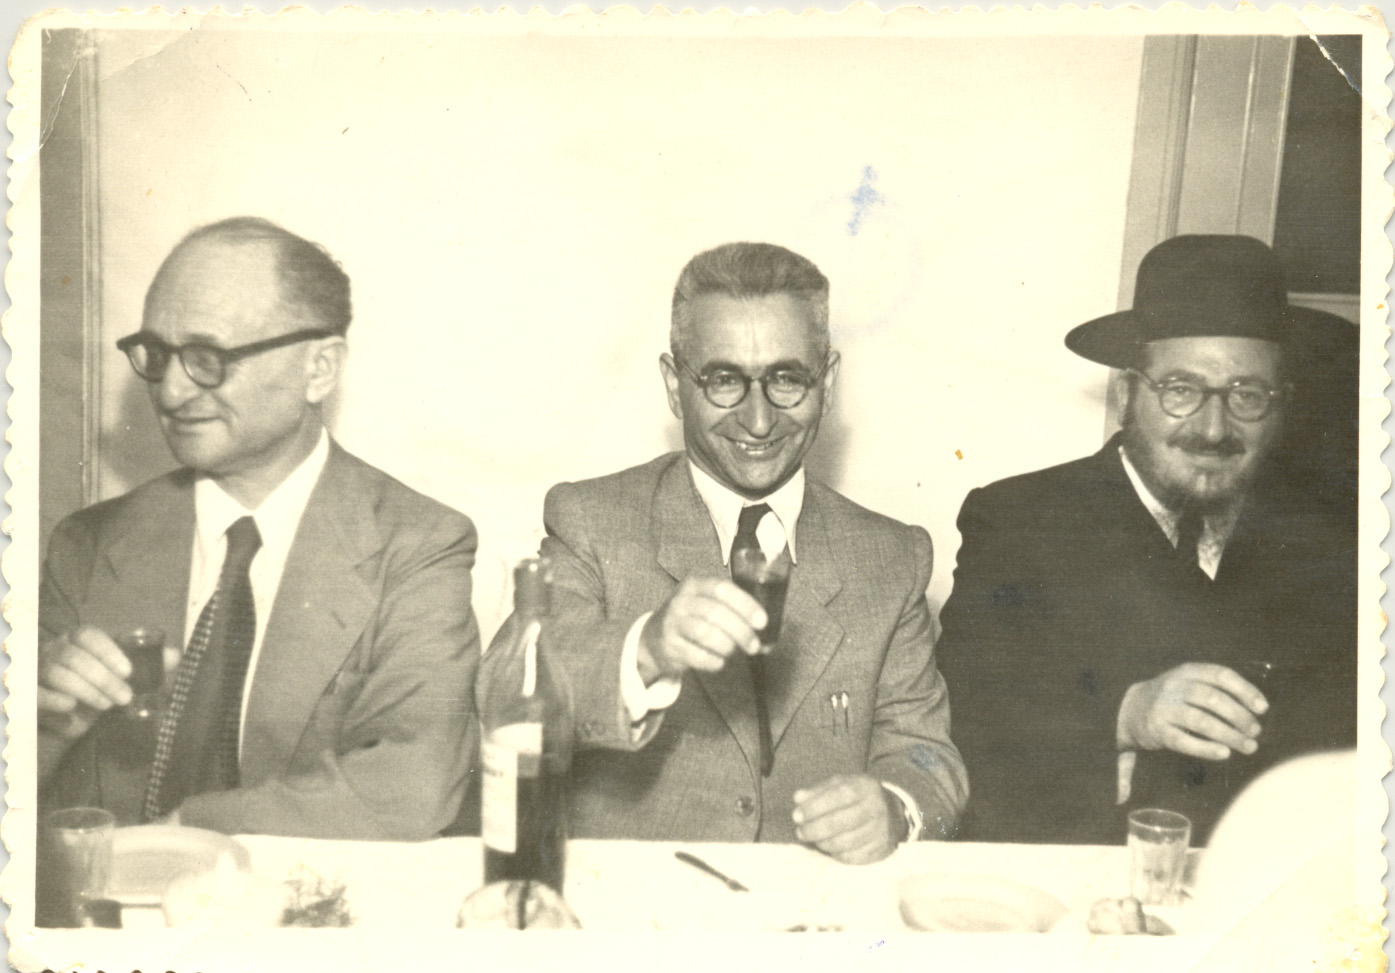 הרב סוקולובר, ברוך ברוידא וברוך אוסטרובסקי שנות החמישים במלון "פיתוח" ברעננה.